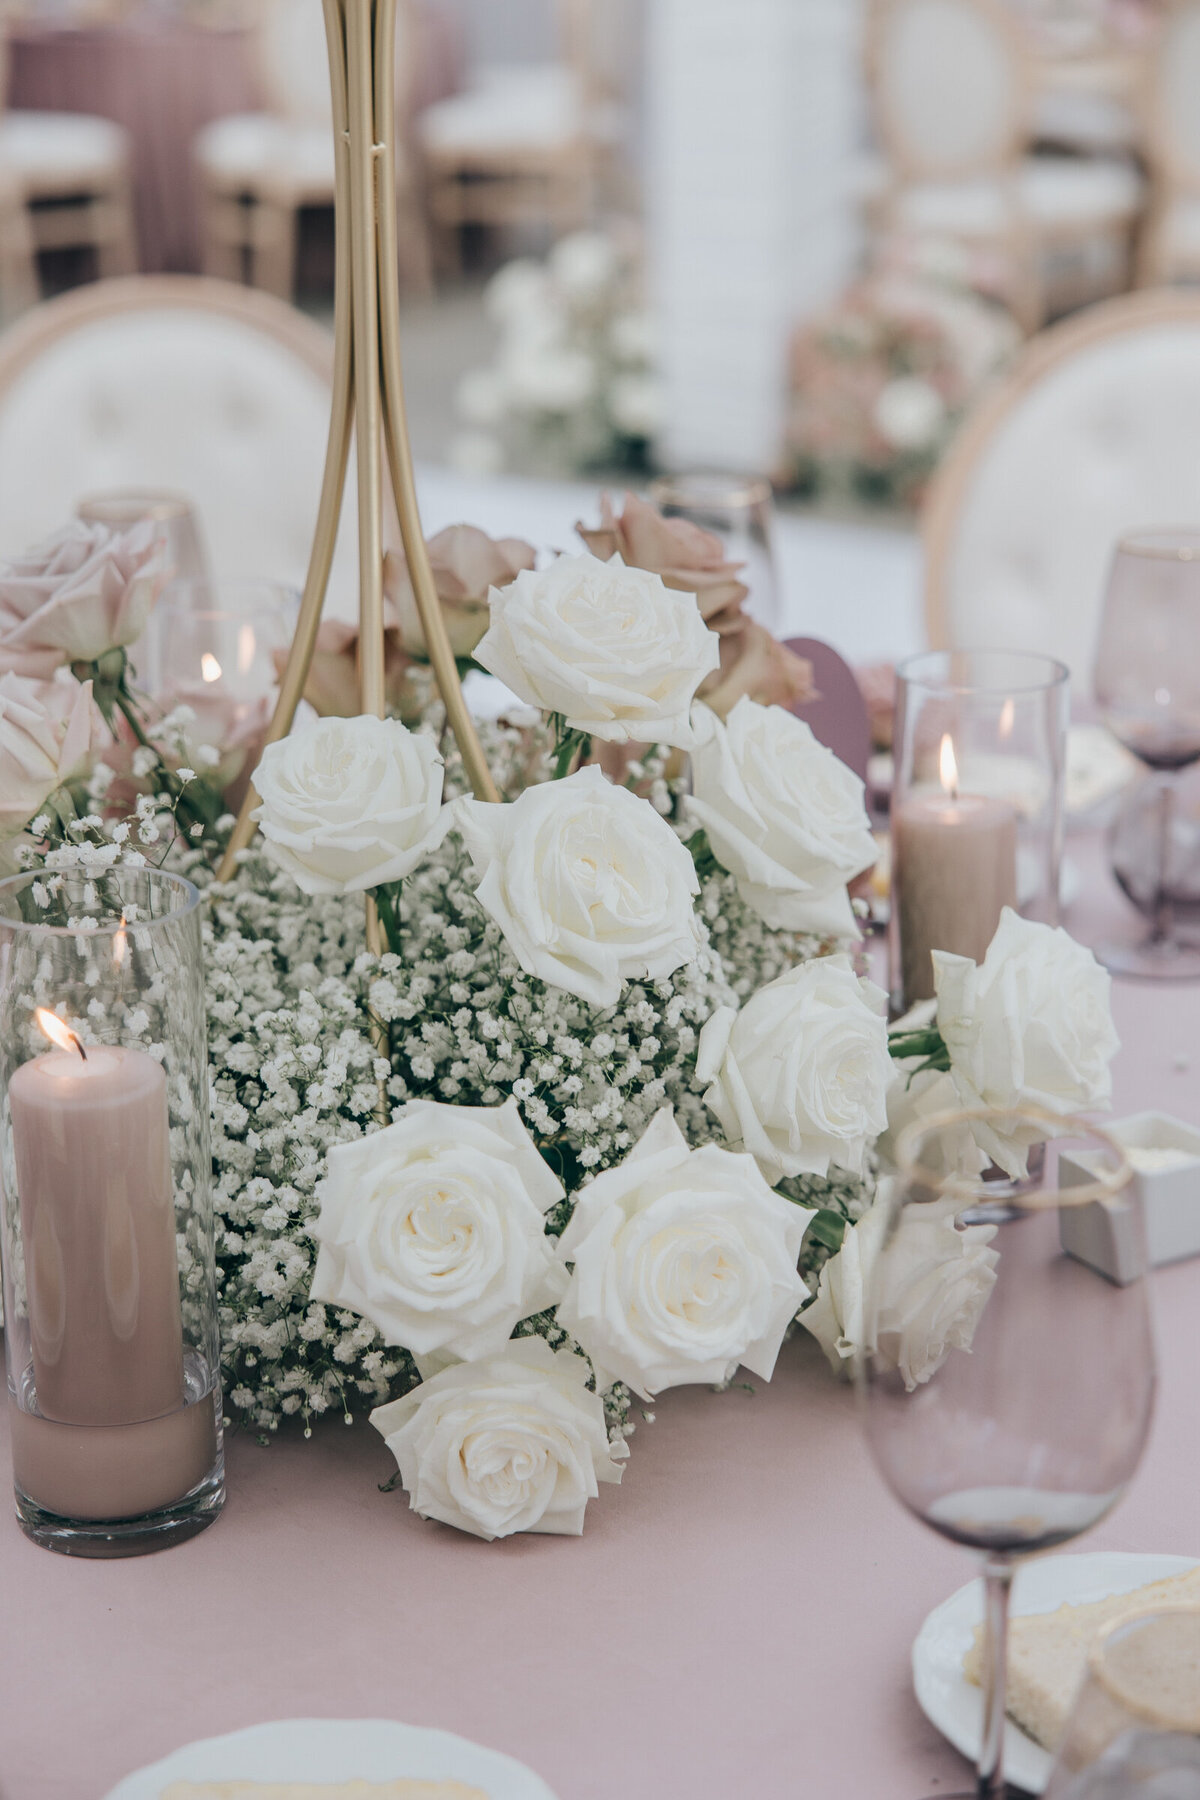 Elegant white roses and lavender glassware for glamorous wedding dinning